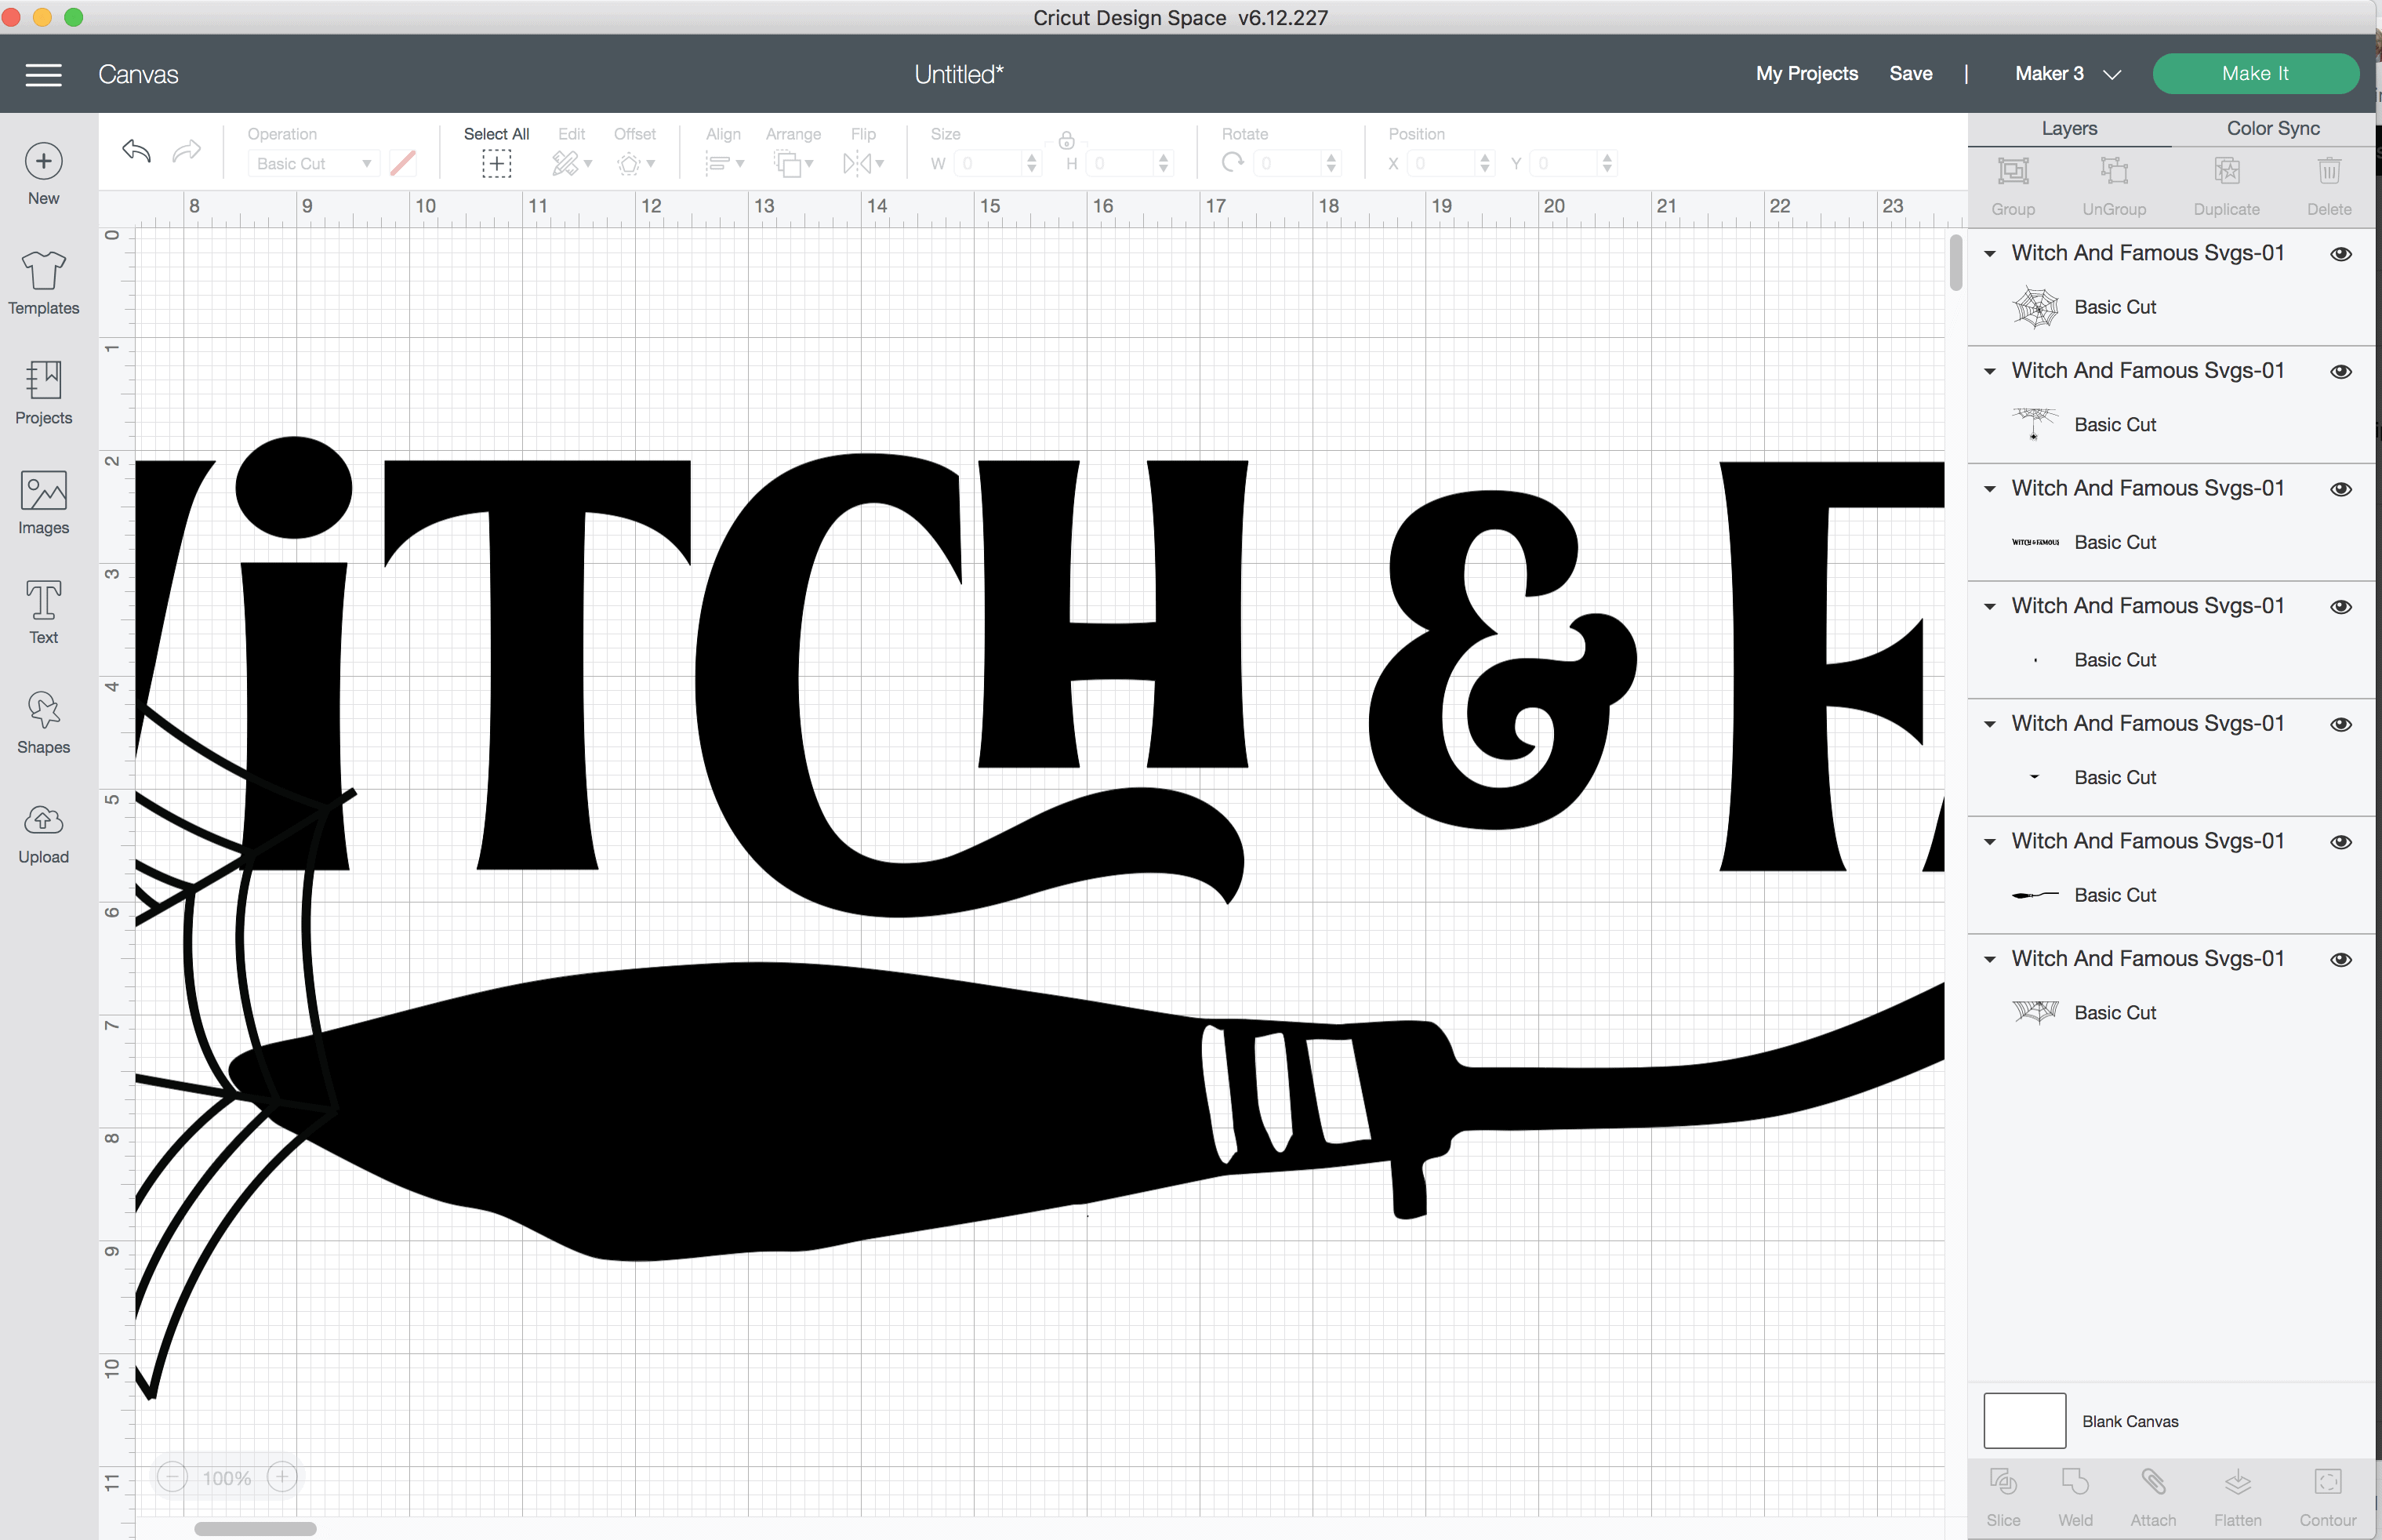 capture d'écran de l'espace de conception Cricut de la sorcière et du célèbre fichier SVG en cours de découpe